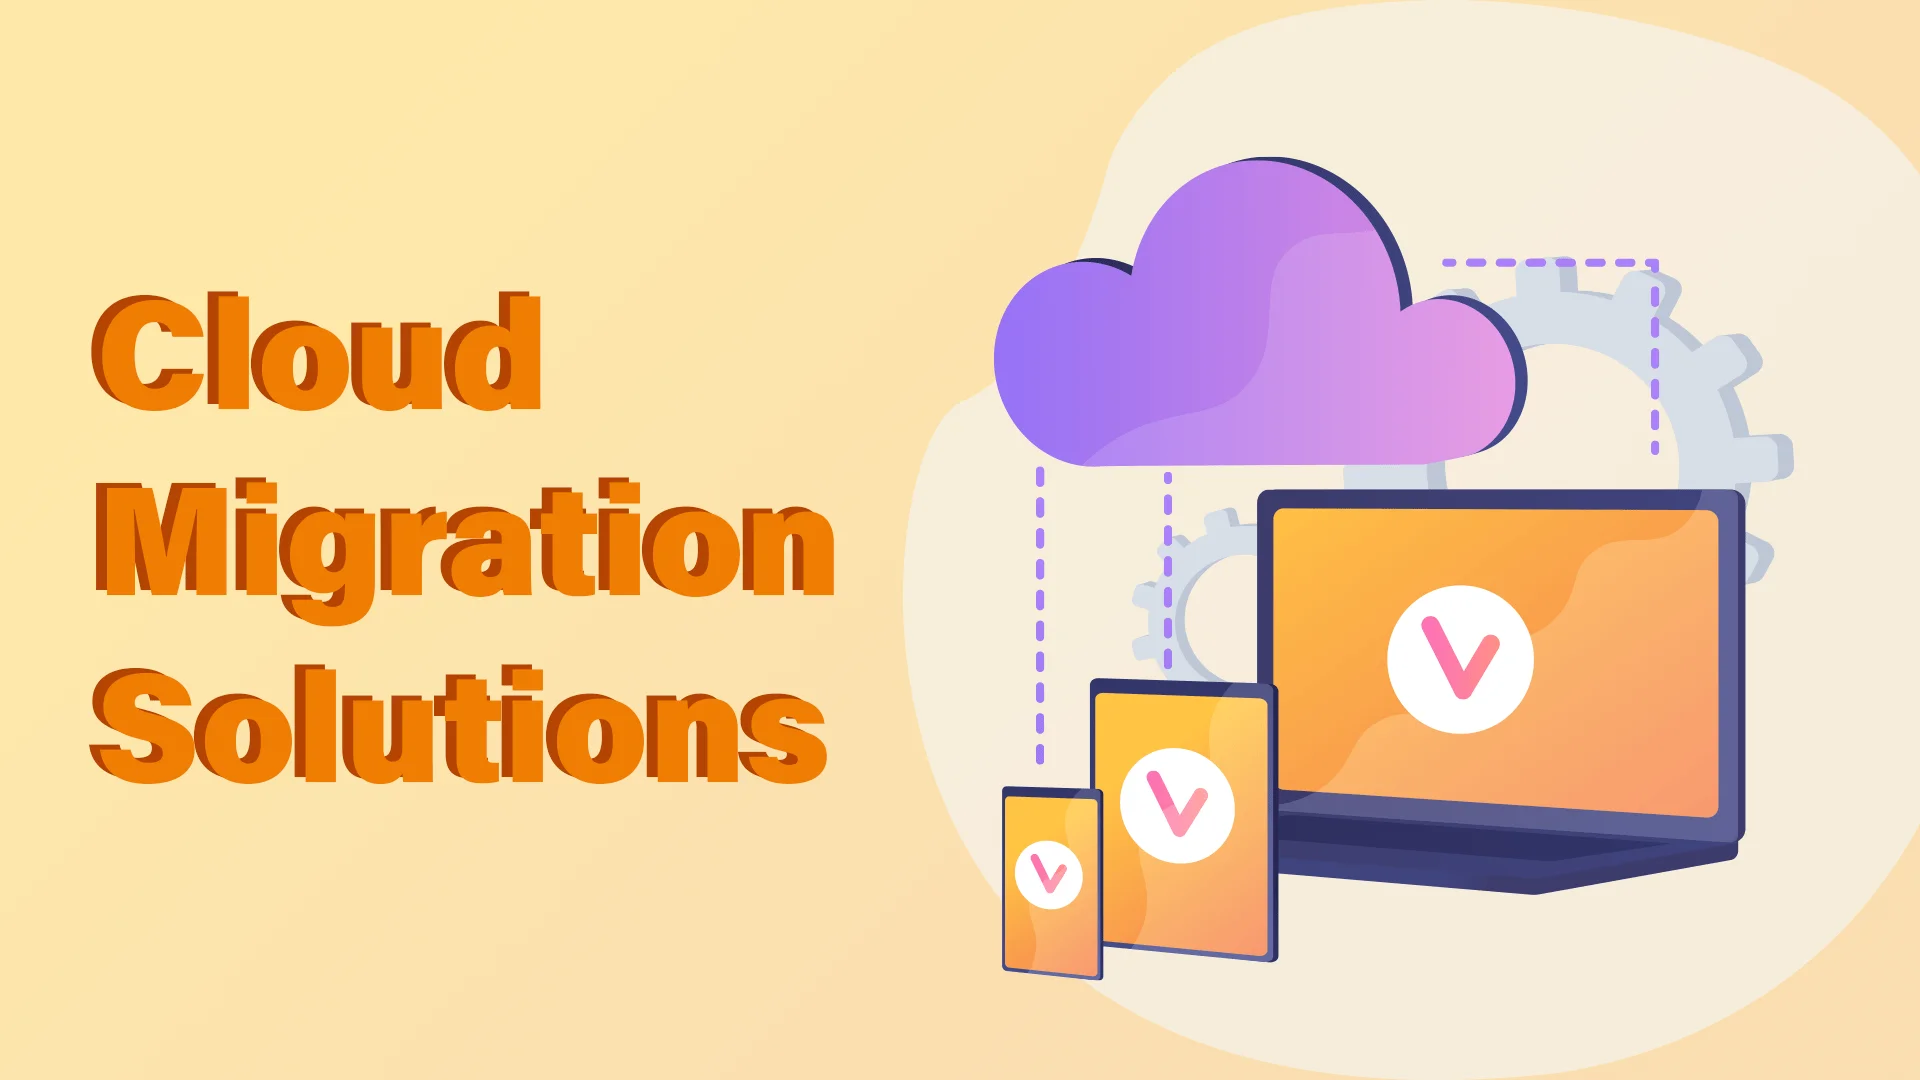 Cloud Migration Solutions